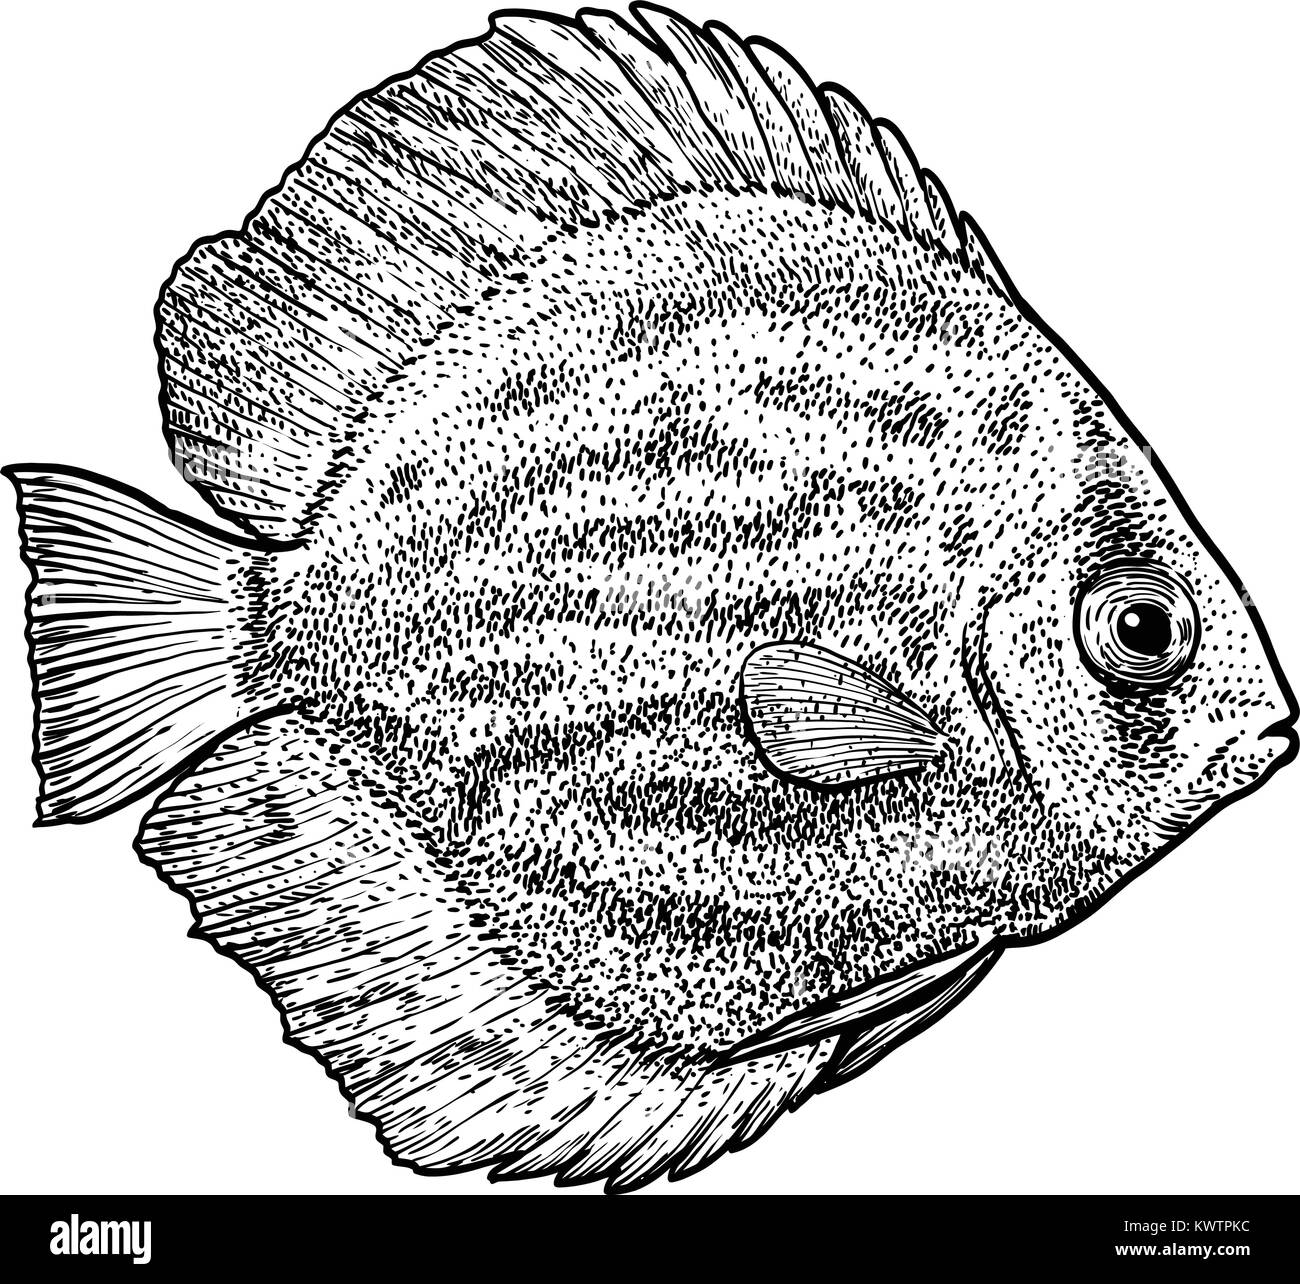 Des poissons de disque illustration, dessin, gravure, encre, dessin au trait, vector Illustration de Vecteur